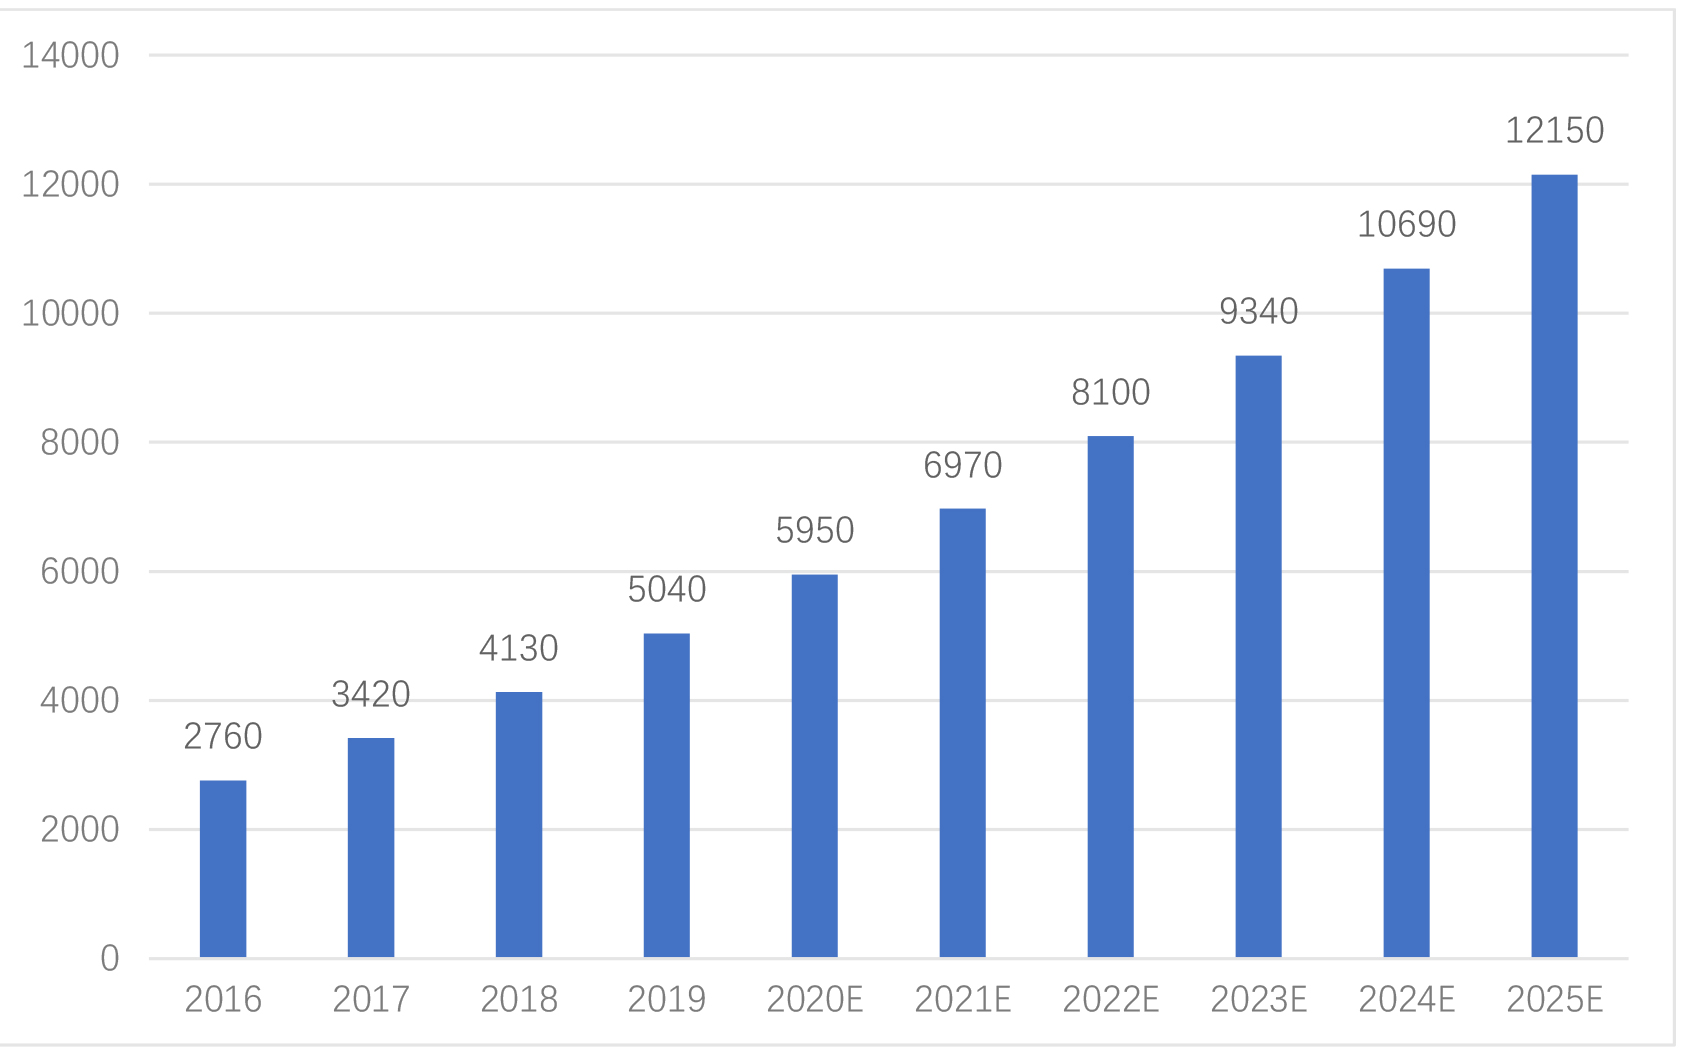 图2 2016-2025年全国智慧社区规模（亿元） 数据来源：《2019年中国智慧社区行业市场前景及投资研究报告》